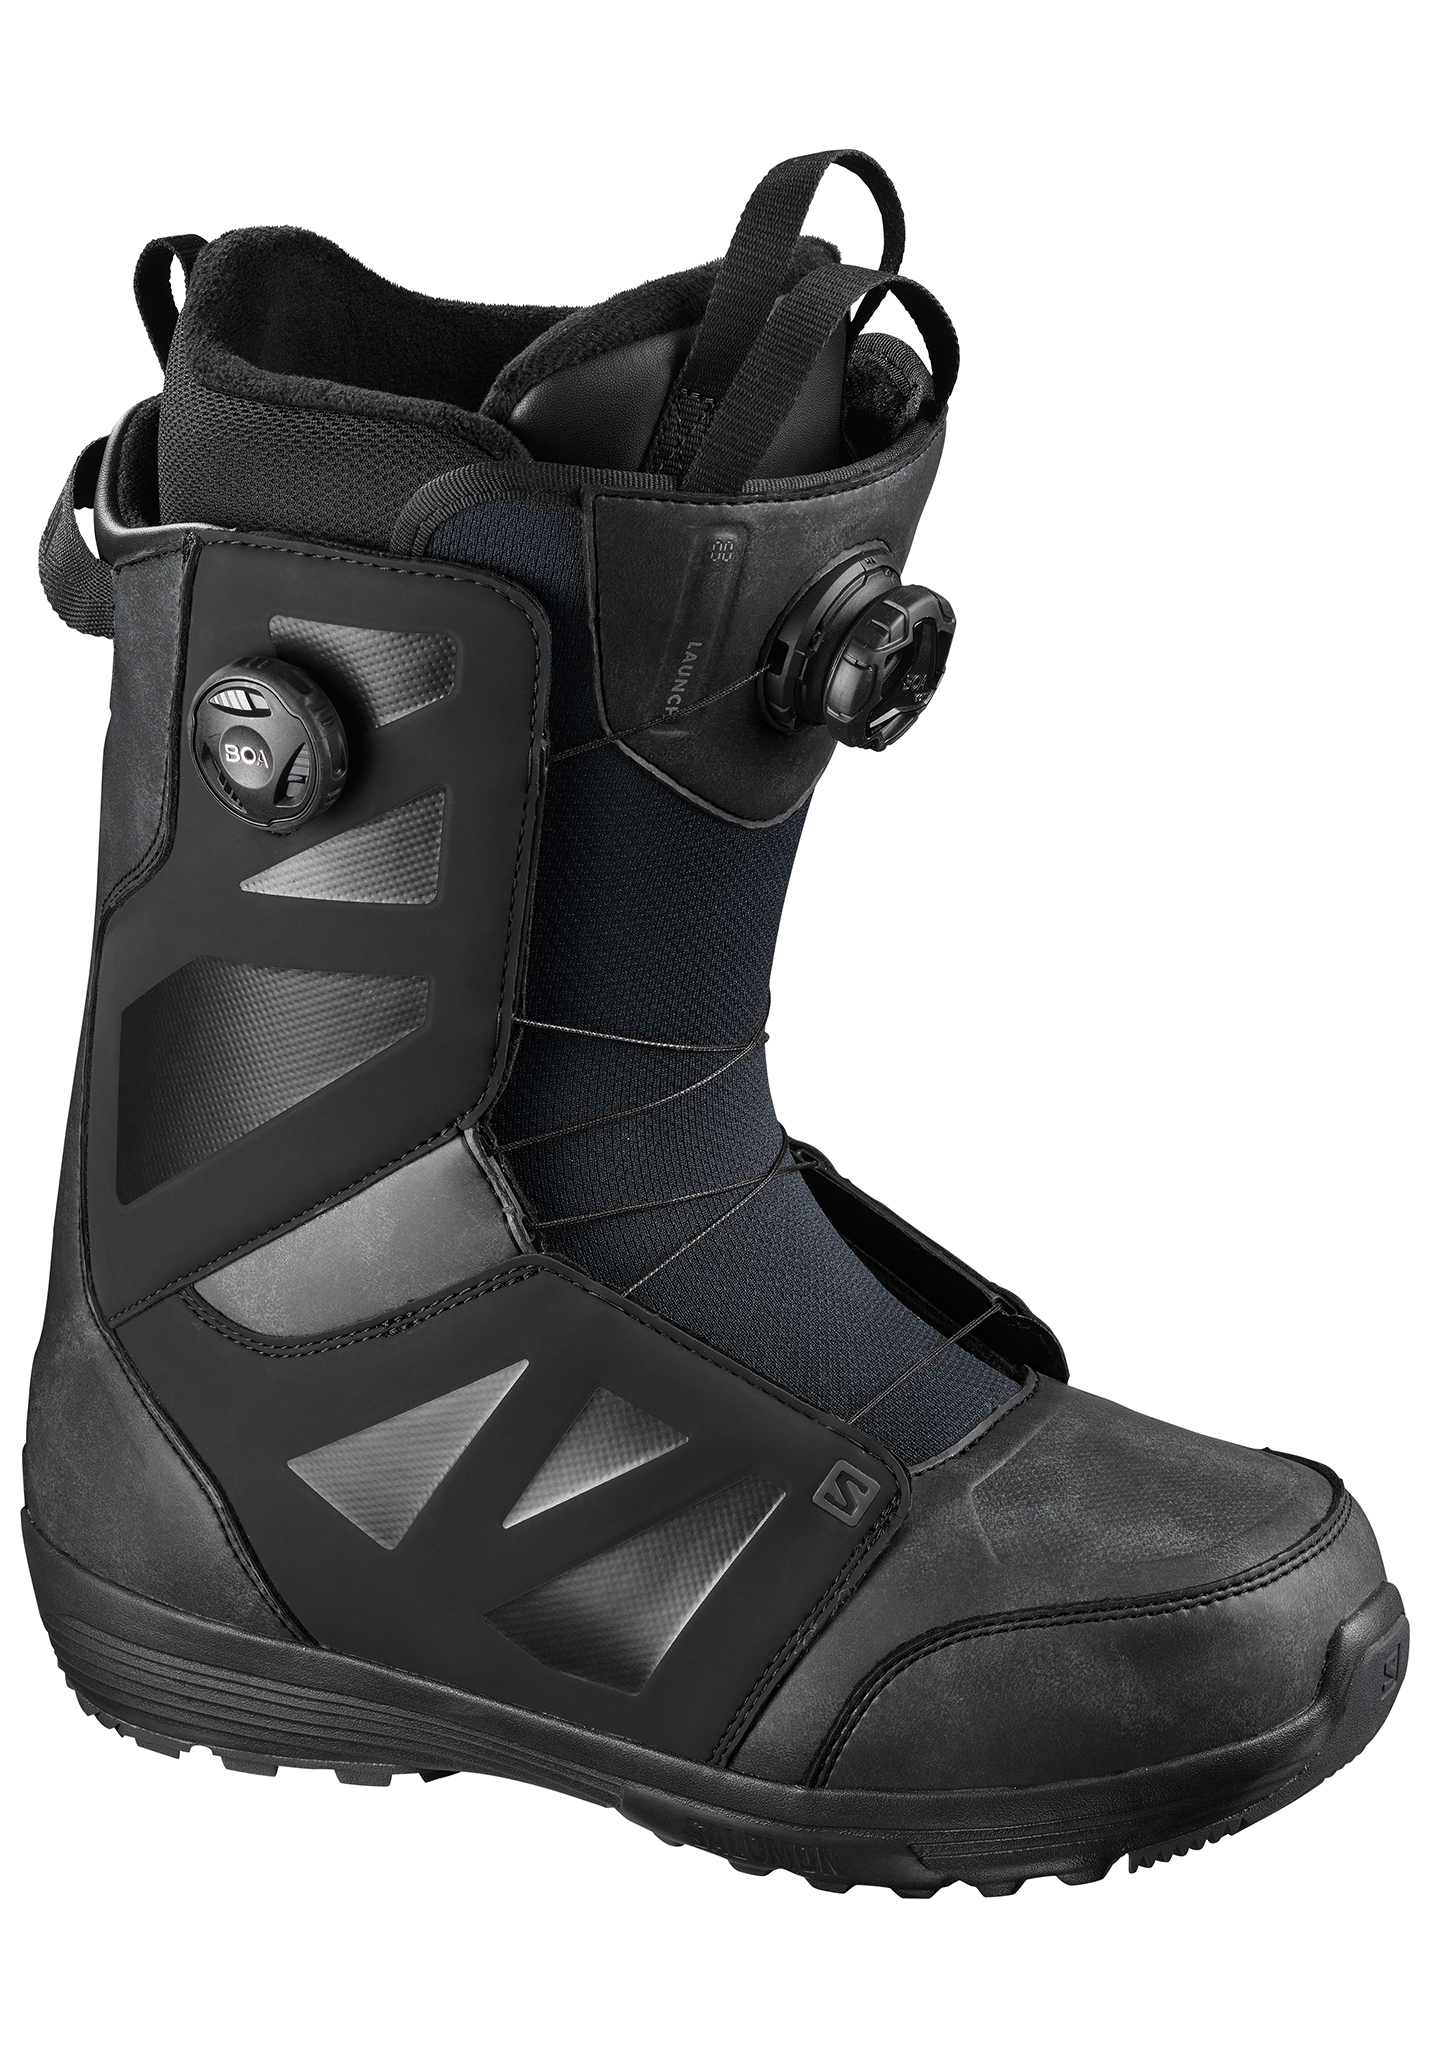 Salomon Launch Boa SJ Boa Snowboard Boots schwarz/schwarz/schwarz 41,5